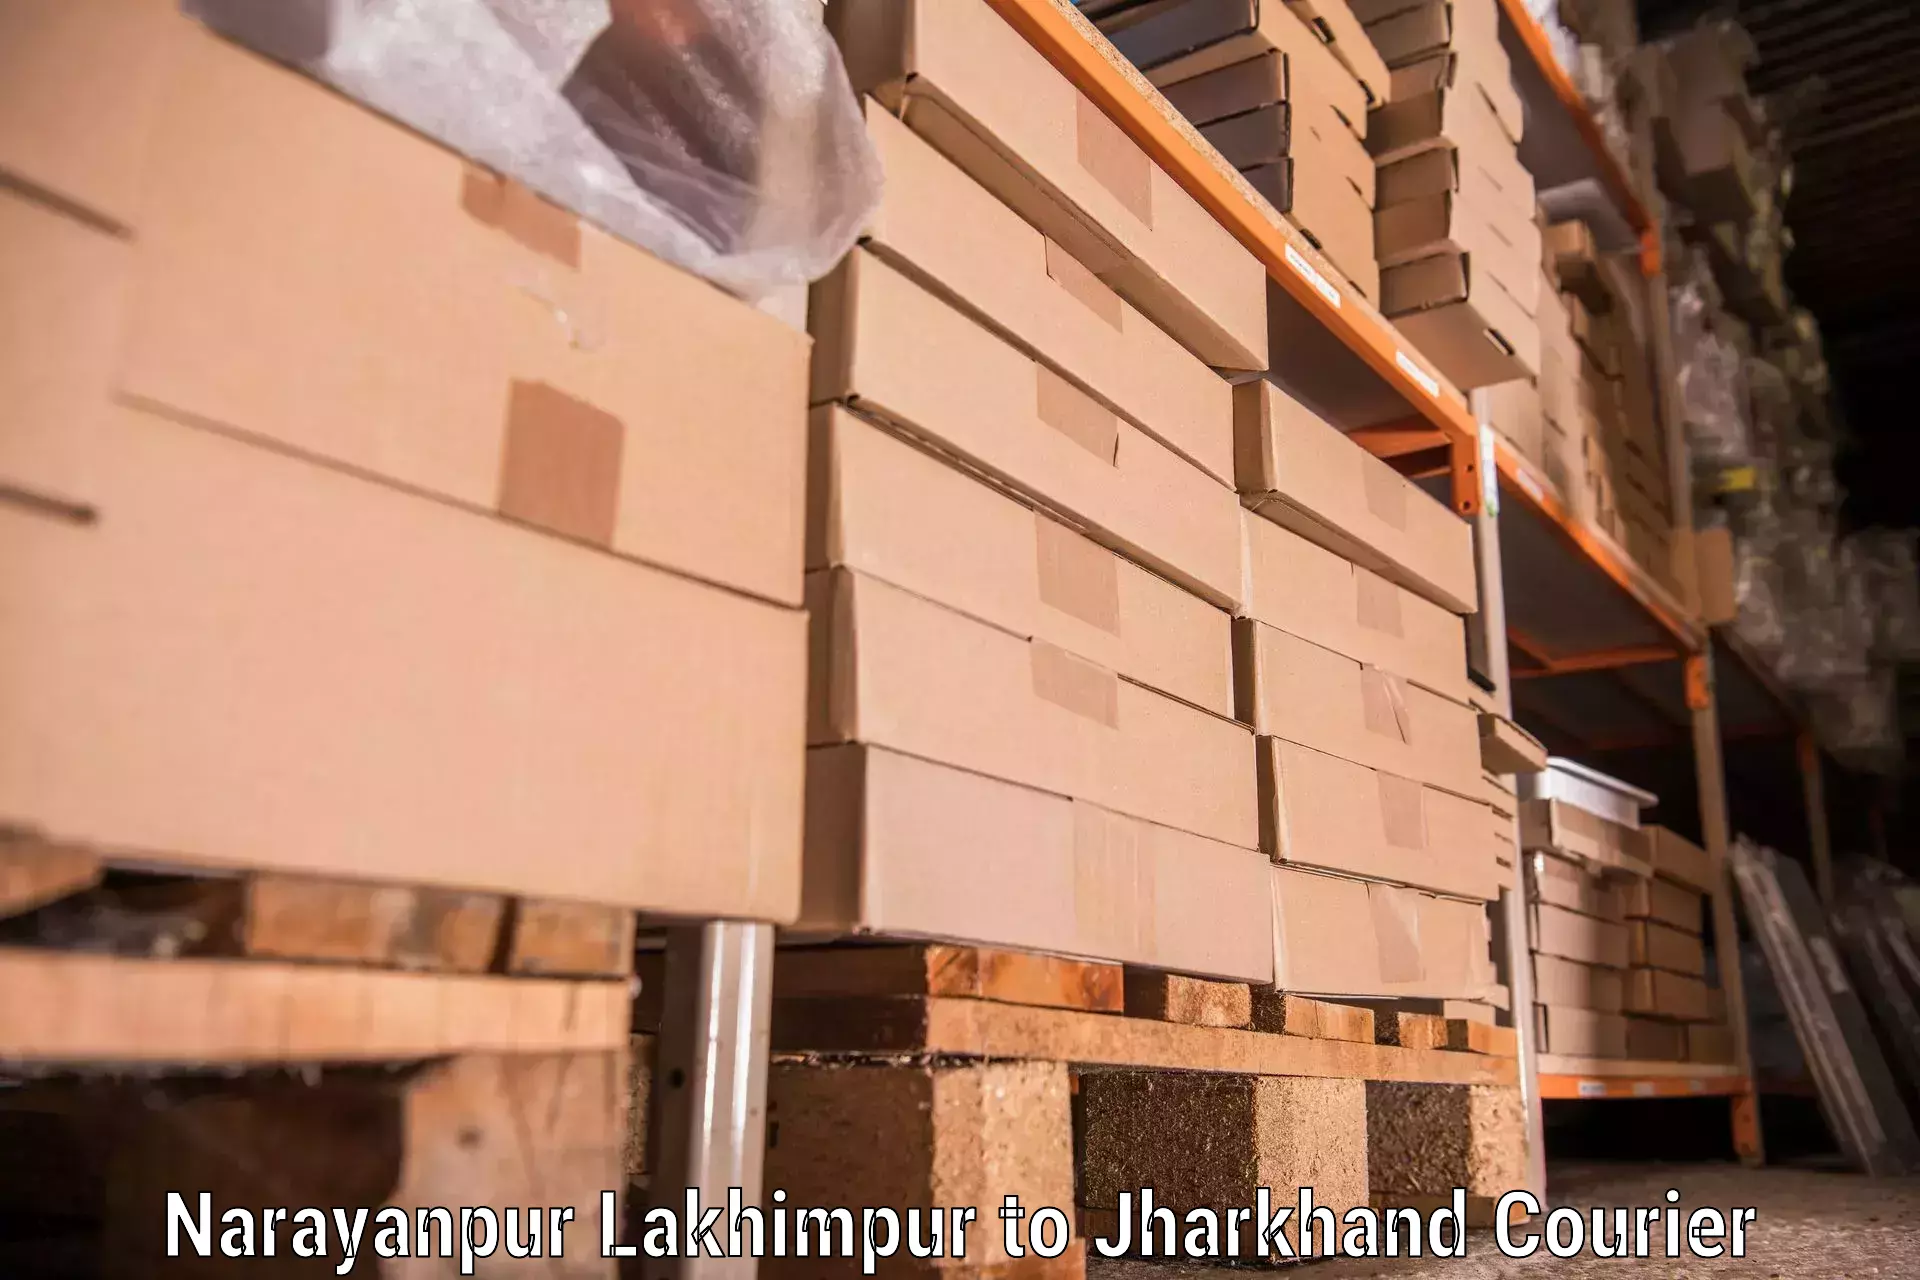 Furniture moving service Narayanpur Lakhimpur to Lohardaga